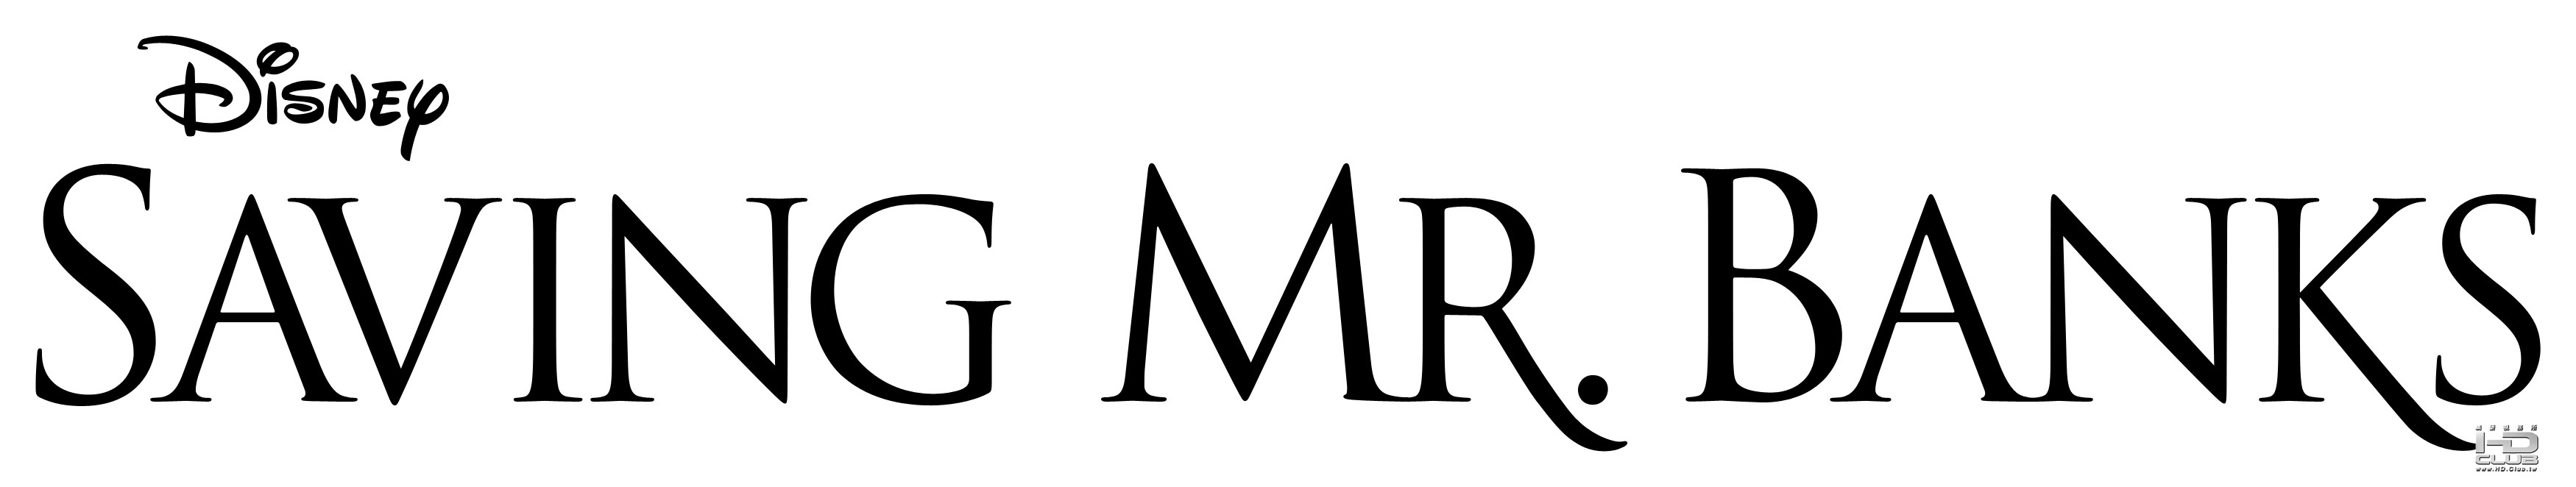 Saving-Mr-Banks-logo.jpg